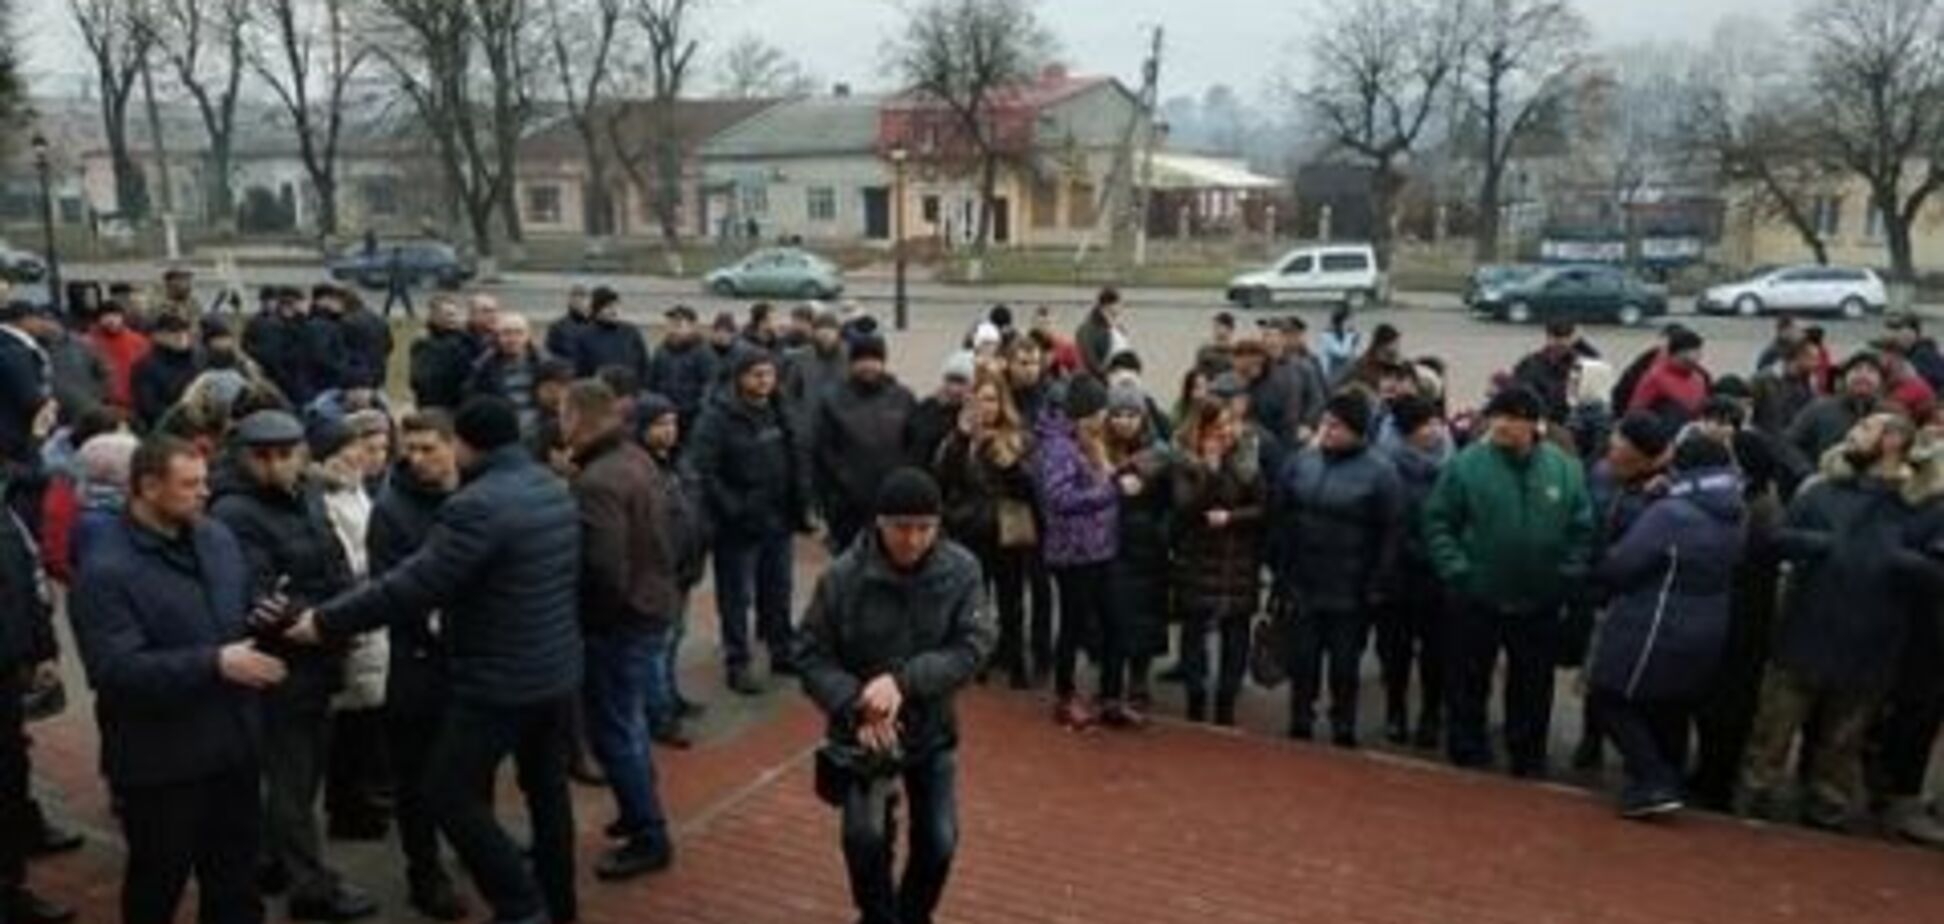 Провели молебень: під Тернополем заблокували санаторій, щоб не пустити евакуйованих з Уханя